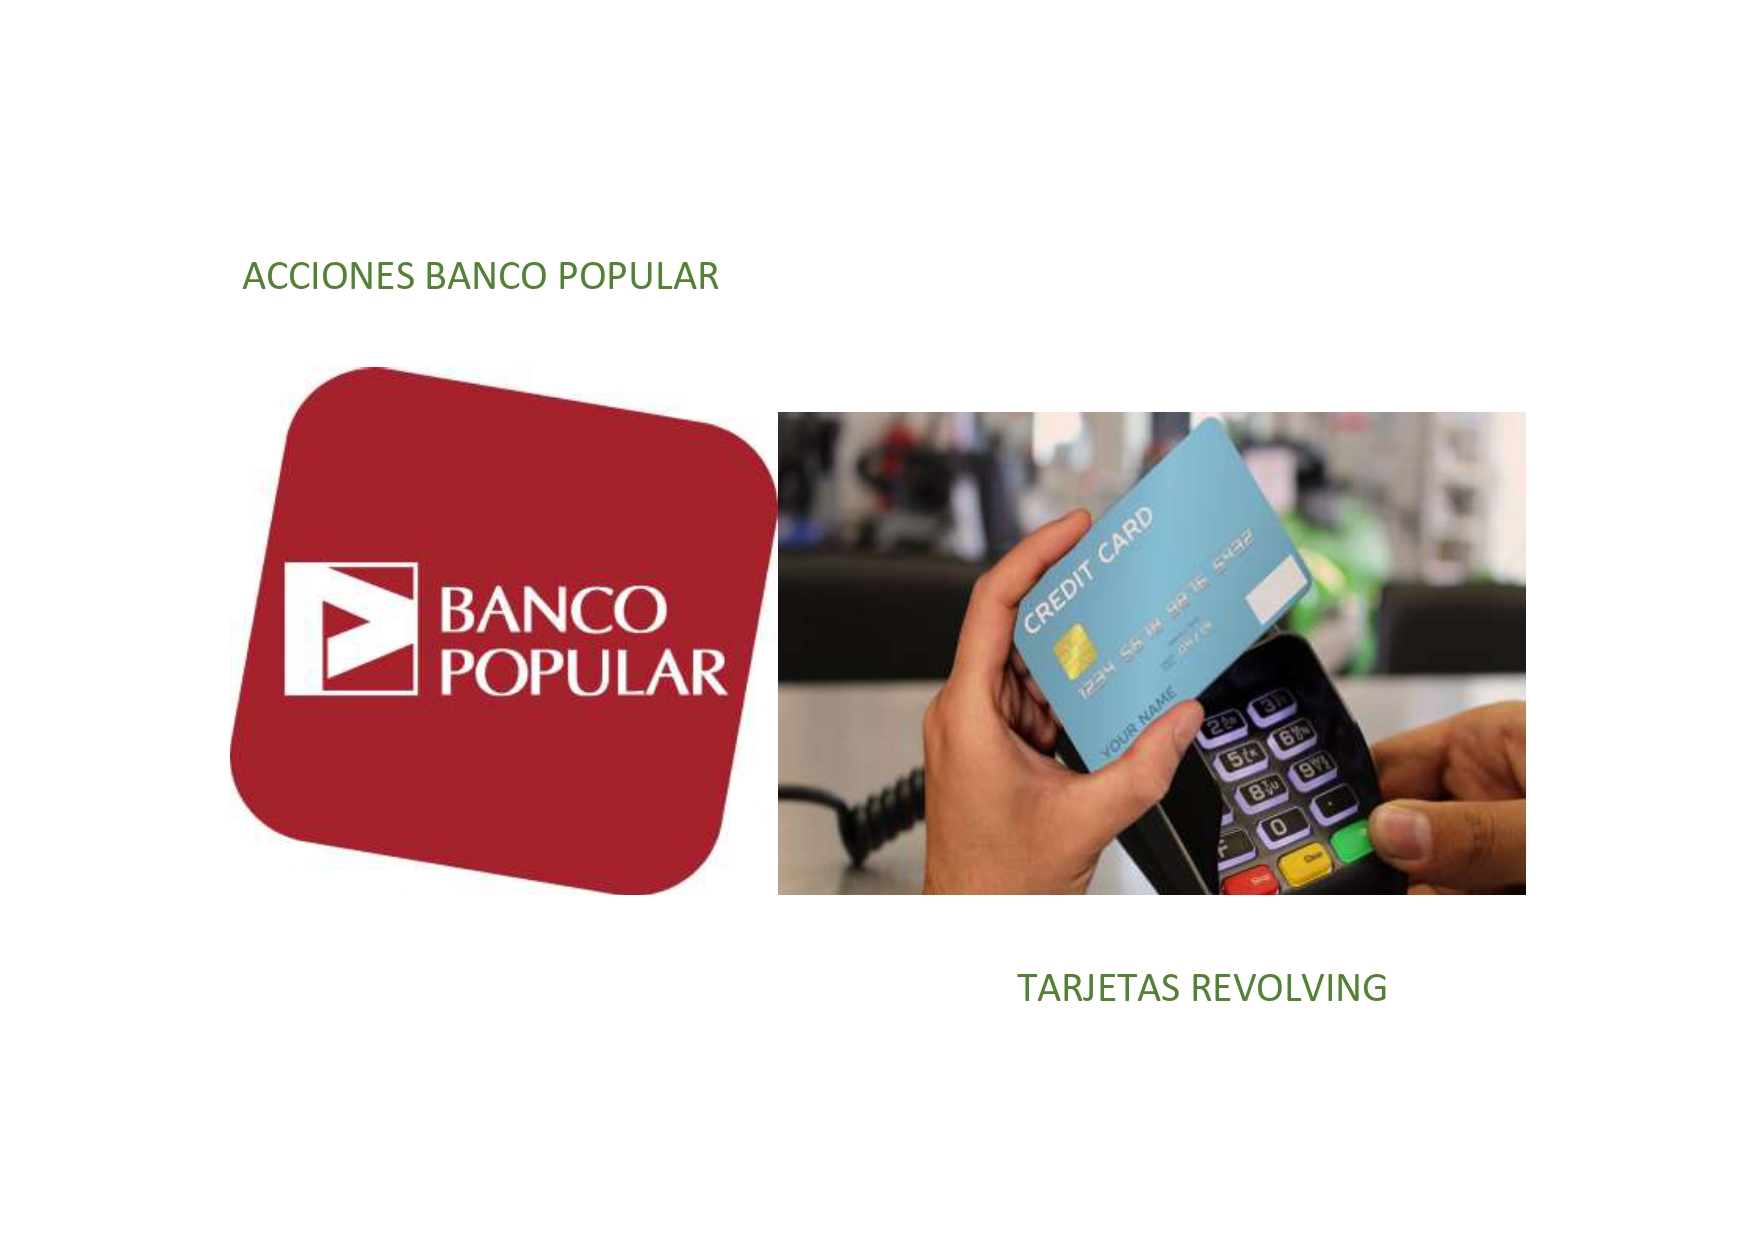 Acciones Banco Popular y Tarjetas revolving. Dos nuevas sentencias favorables en Estella y Pamplona.